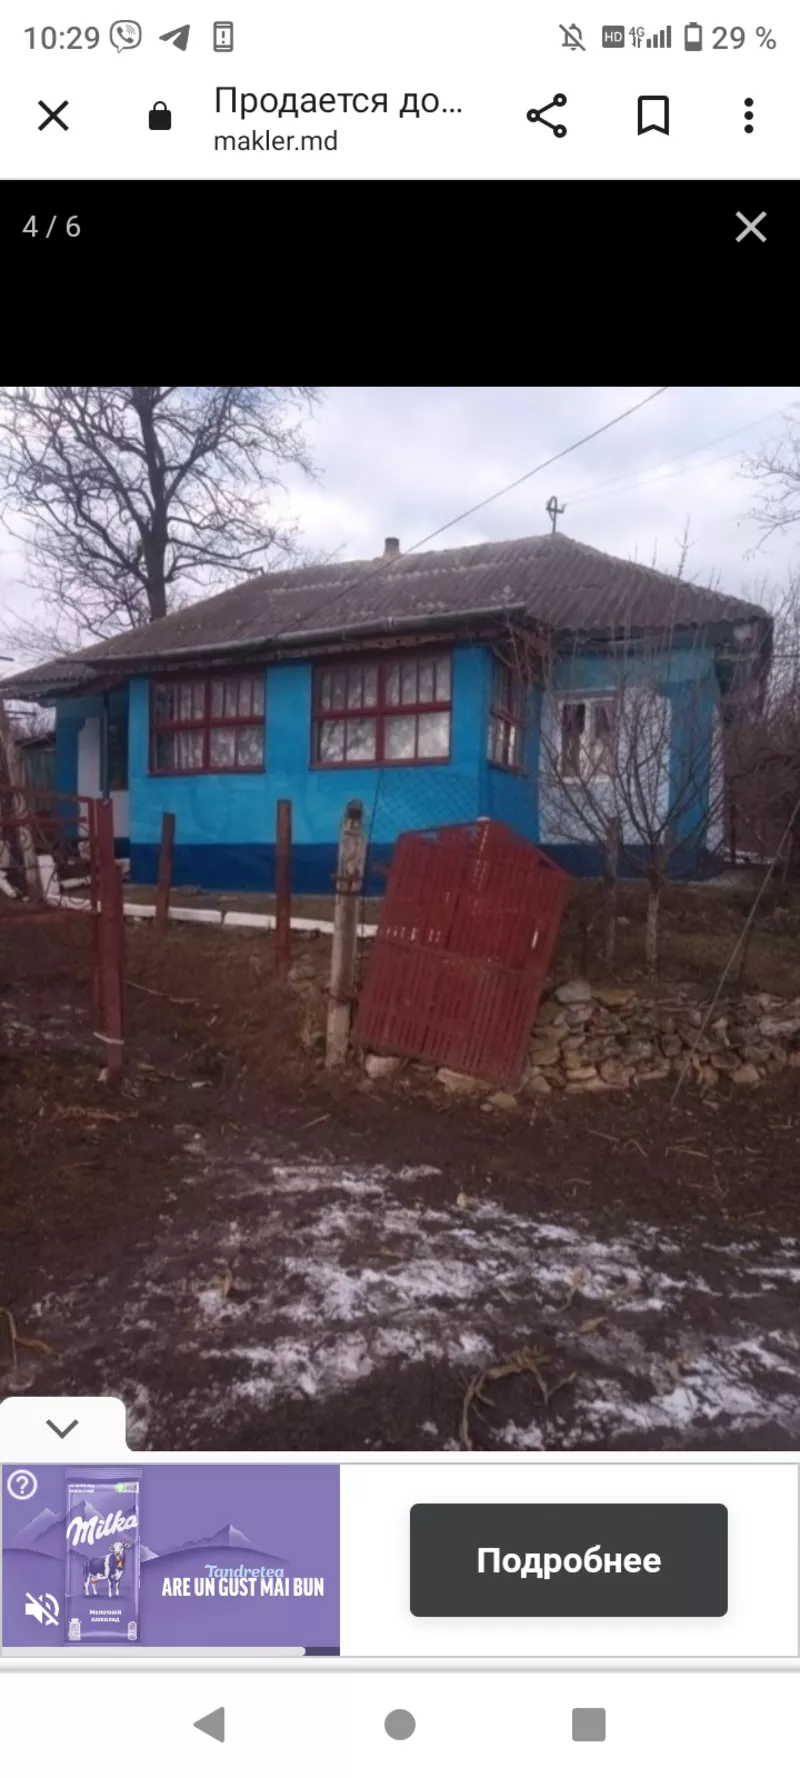 Продается дом в рыбницком районе с Андреевка 